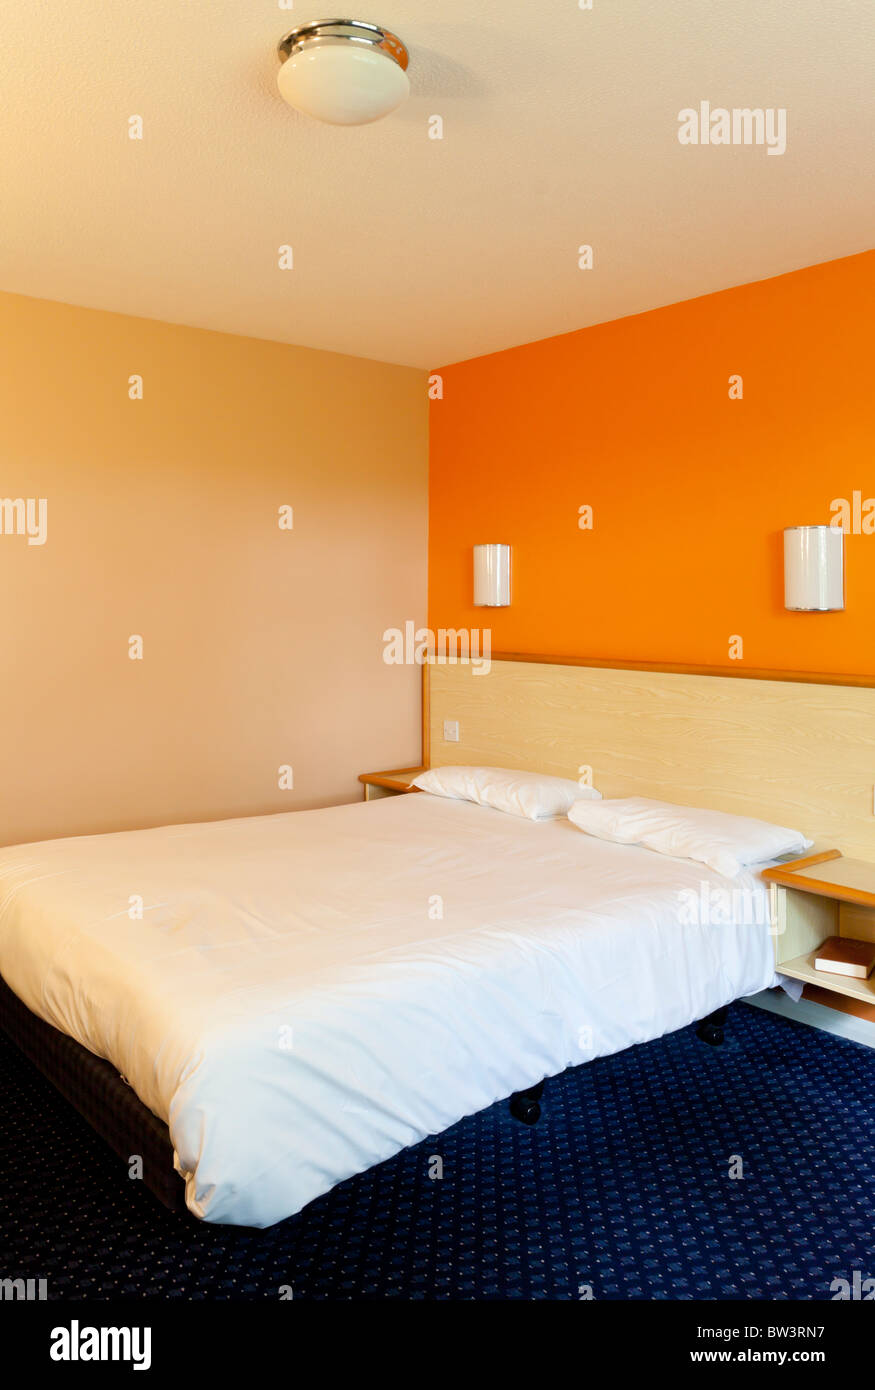 Interno del Travelodge la stanza del motel un bilancio catena di alberghi diffusi nel Regno Unito a prezzi bassi e senza fronzoli Foto Stock